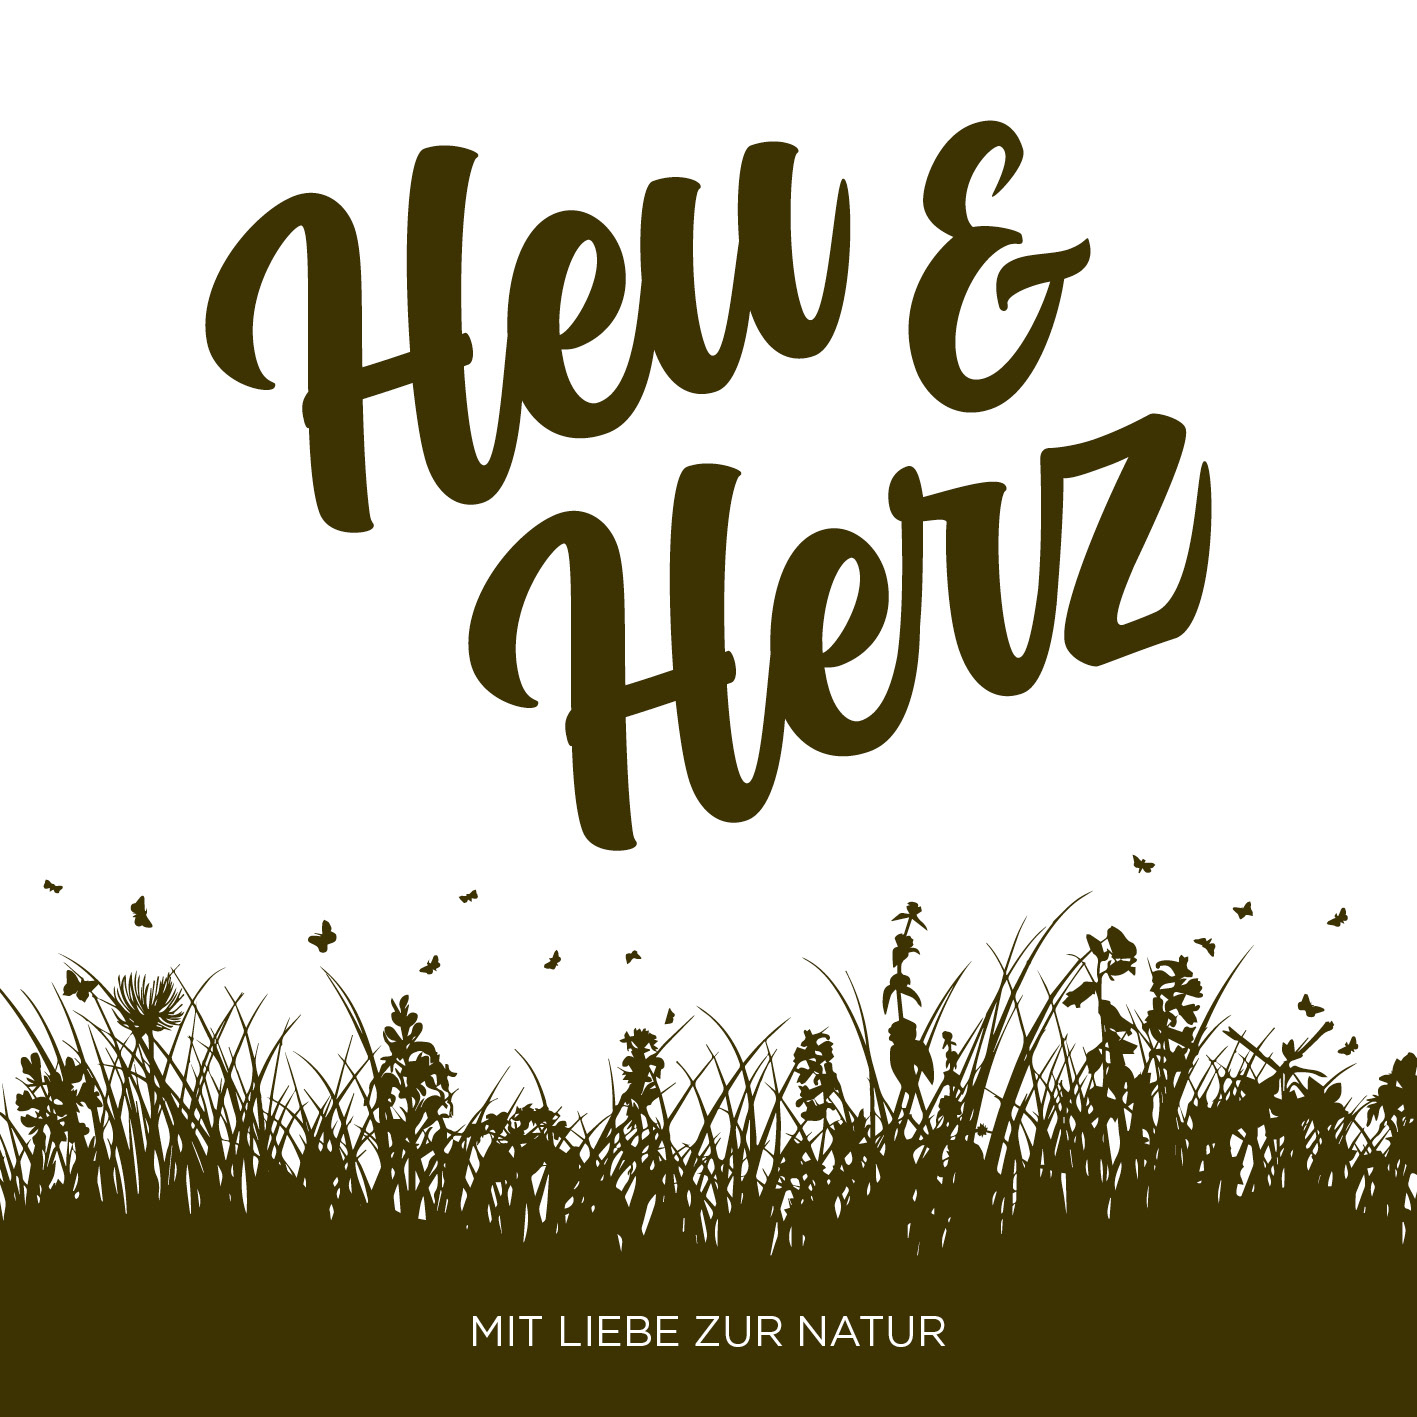 (c) Heu-und-herz.ch